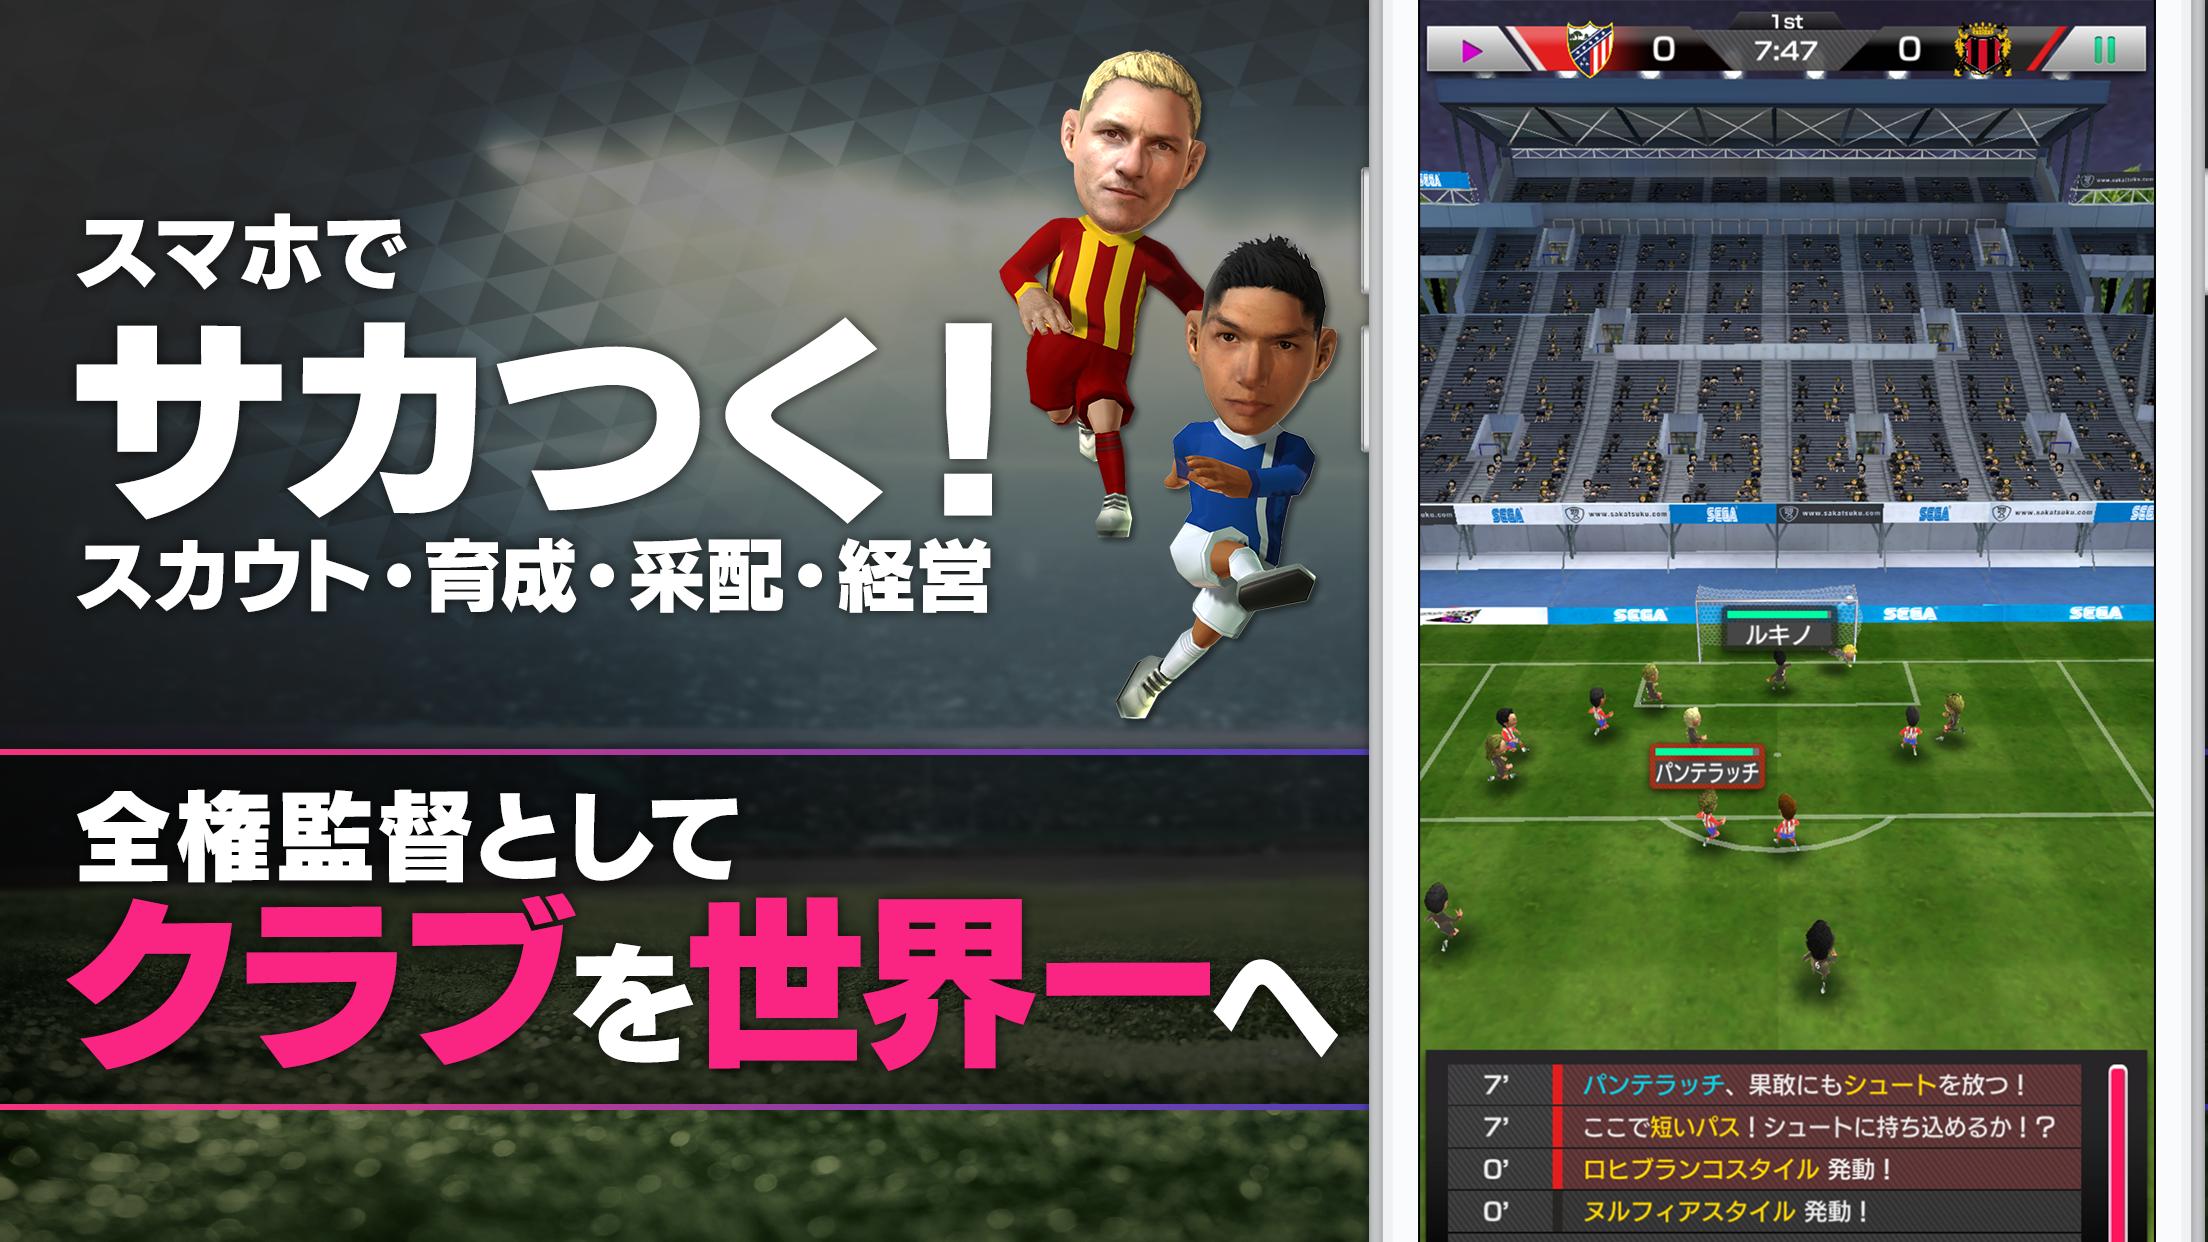 サカつくrtw クラブ経営シミュレーション サッカーゲーム For Android Apk Download